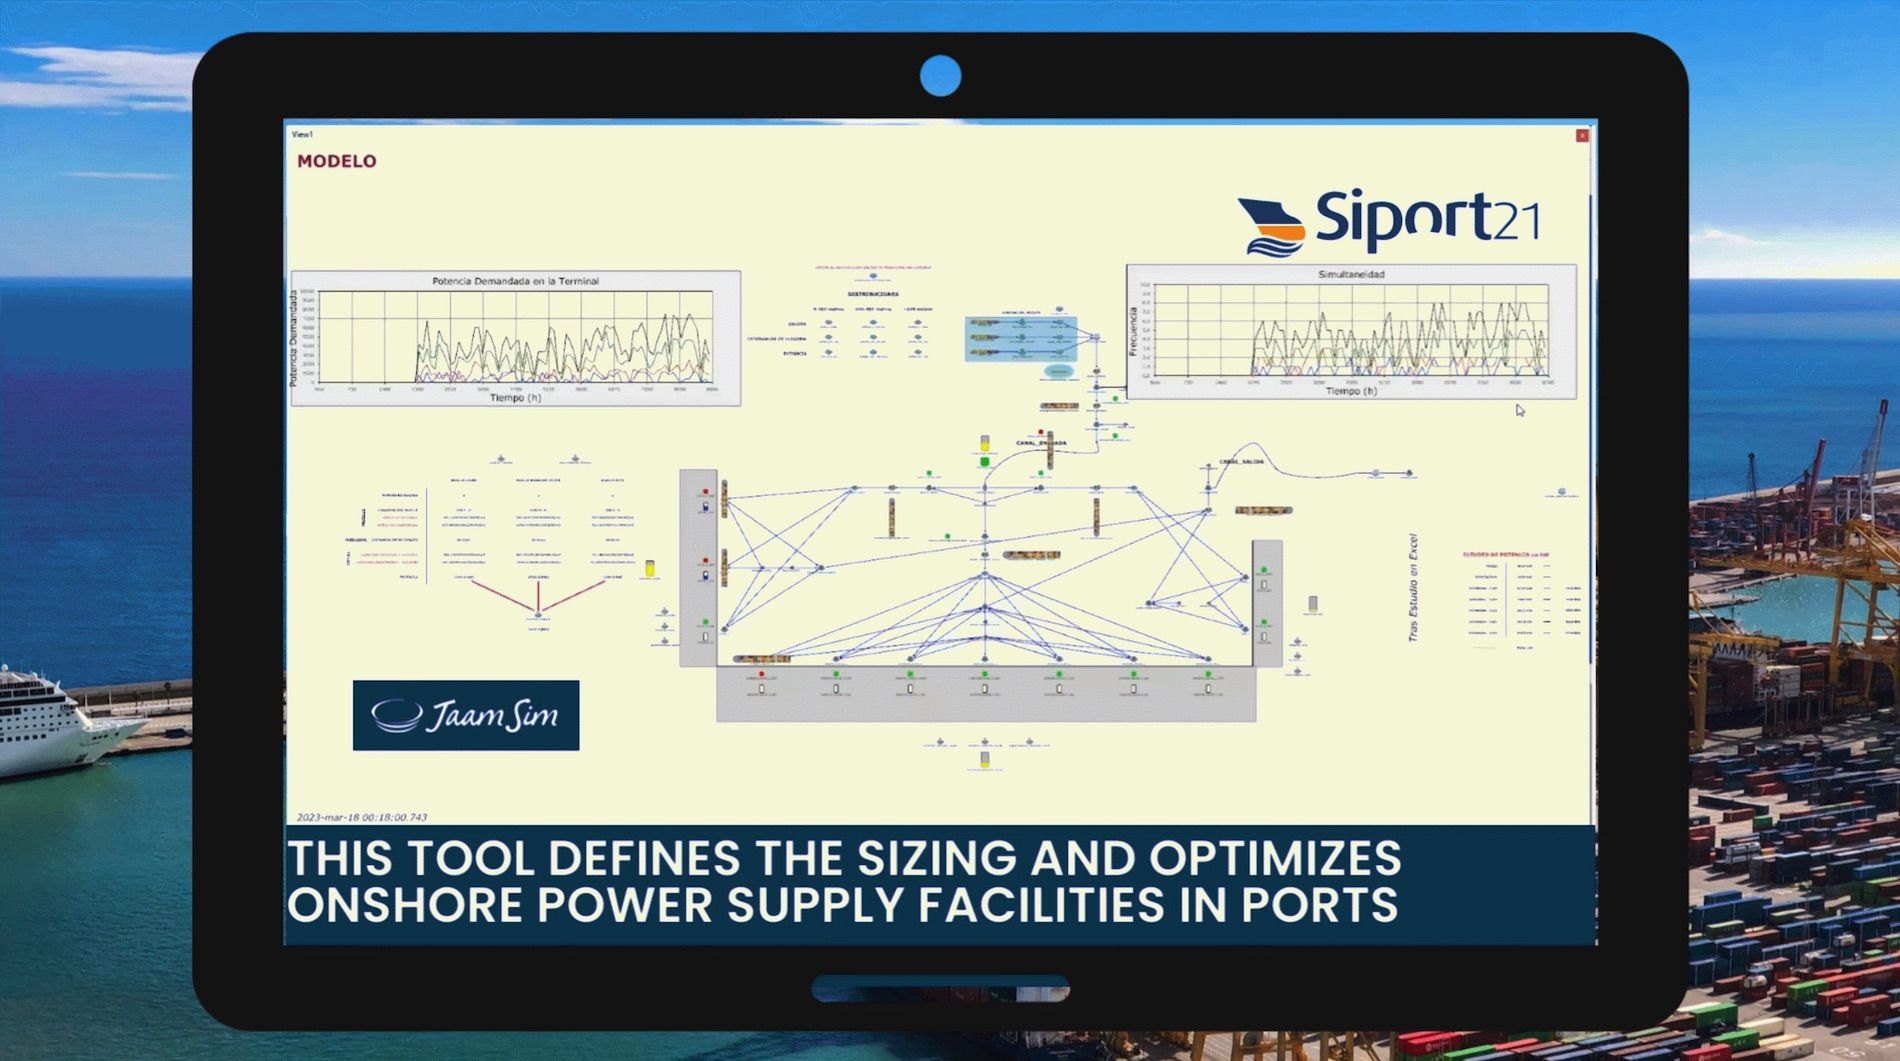 Siport21 ha desarrollado un simulador para definir el dimensionamiento y optimización de estas instalaciones en puertos.